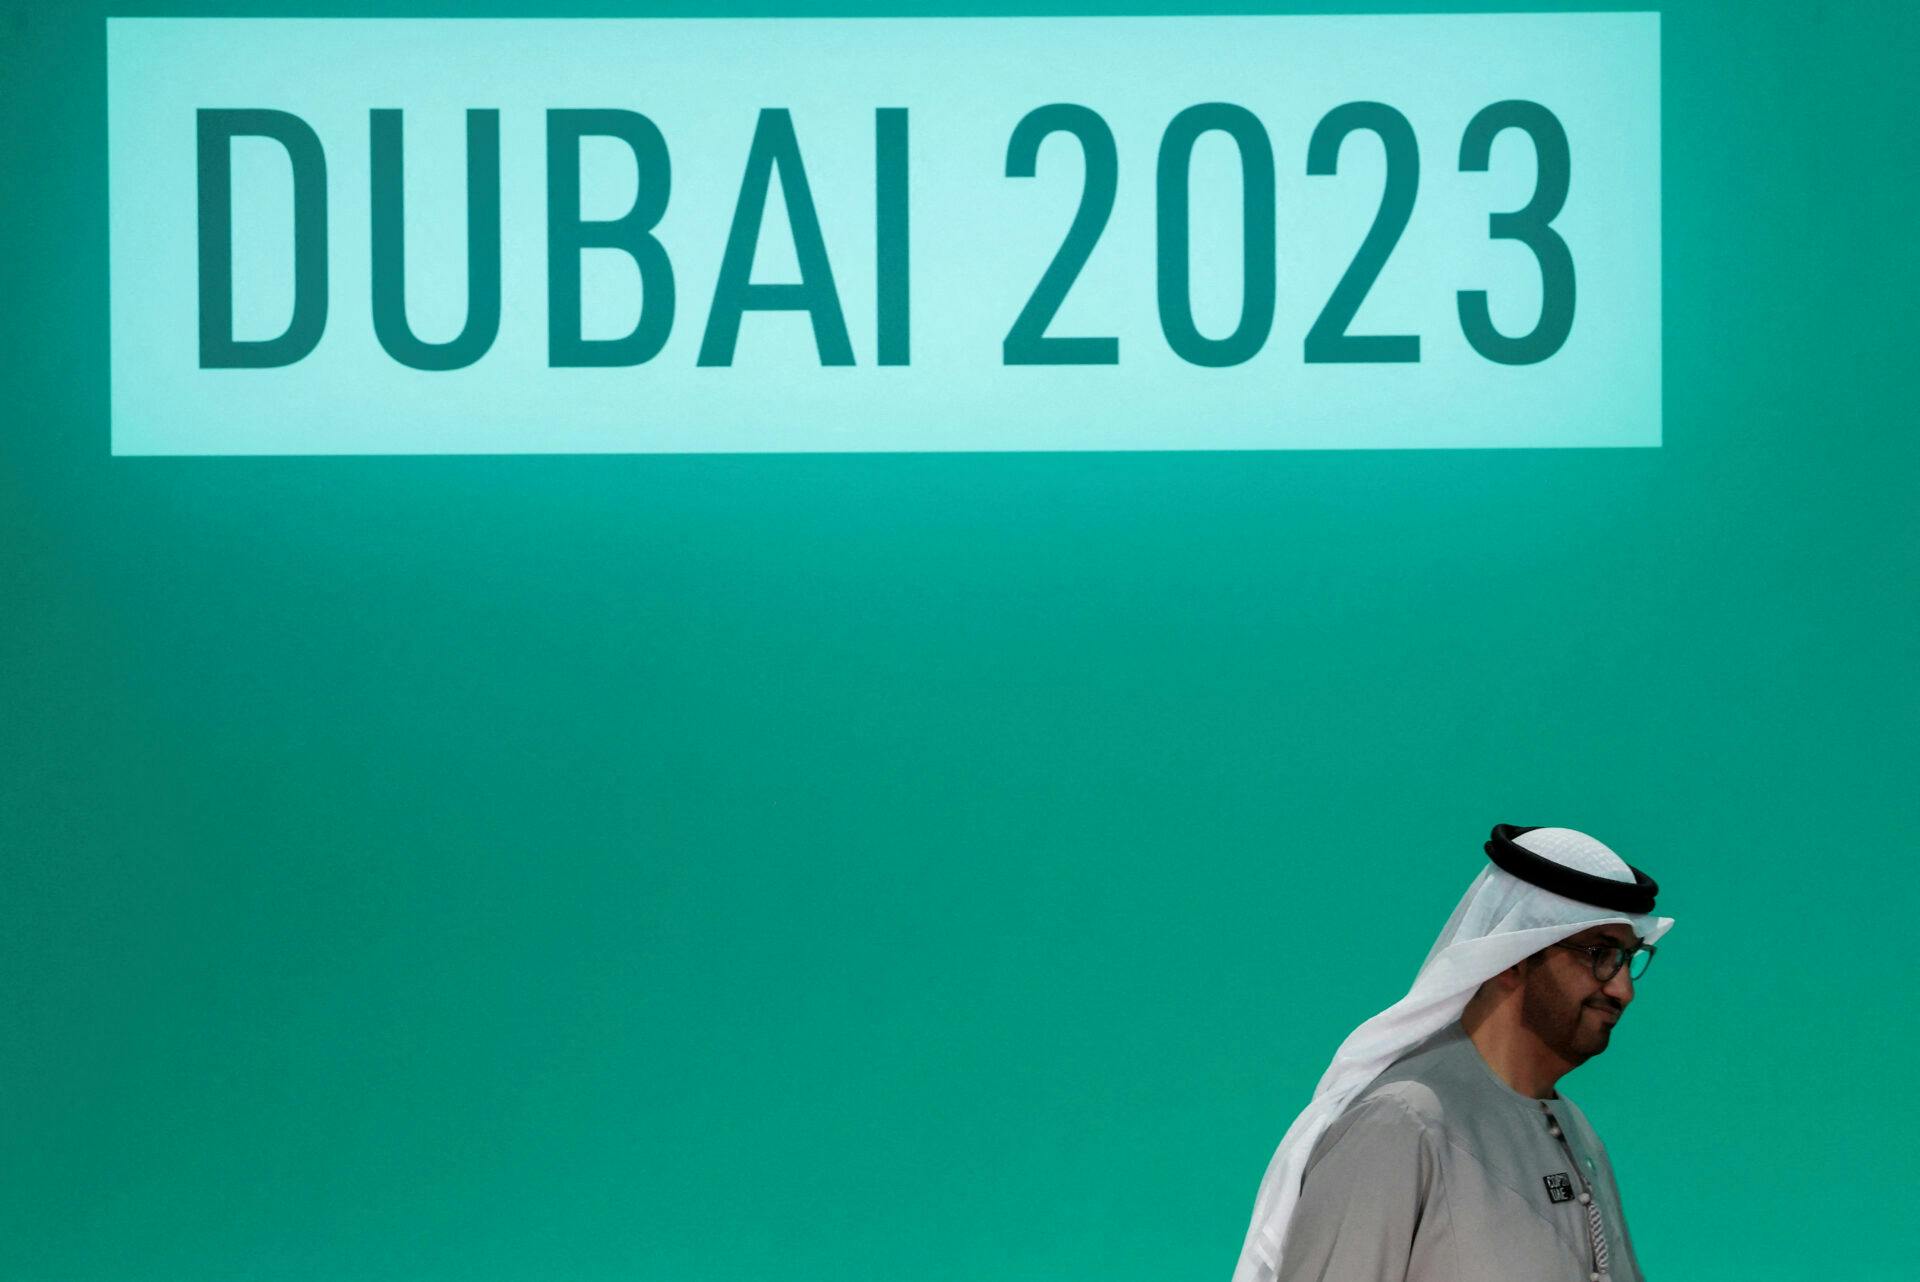 Mann i tradisjonelt saudiarabisk bekledning foran en stor grønn skjerm hvor det står Dubai 2023